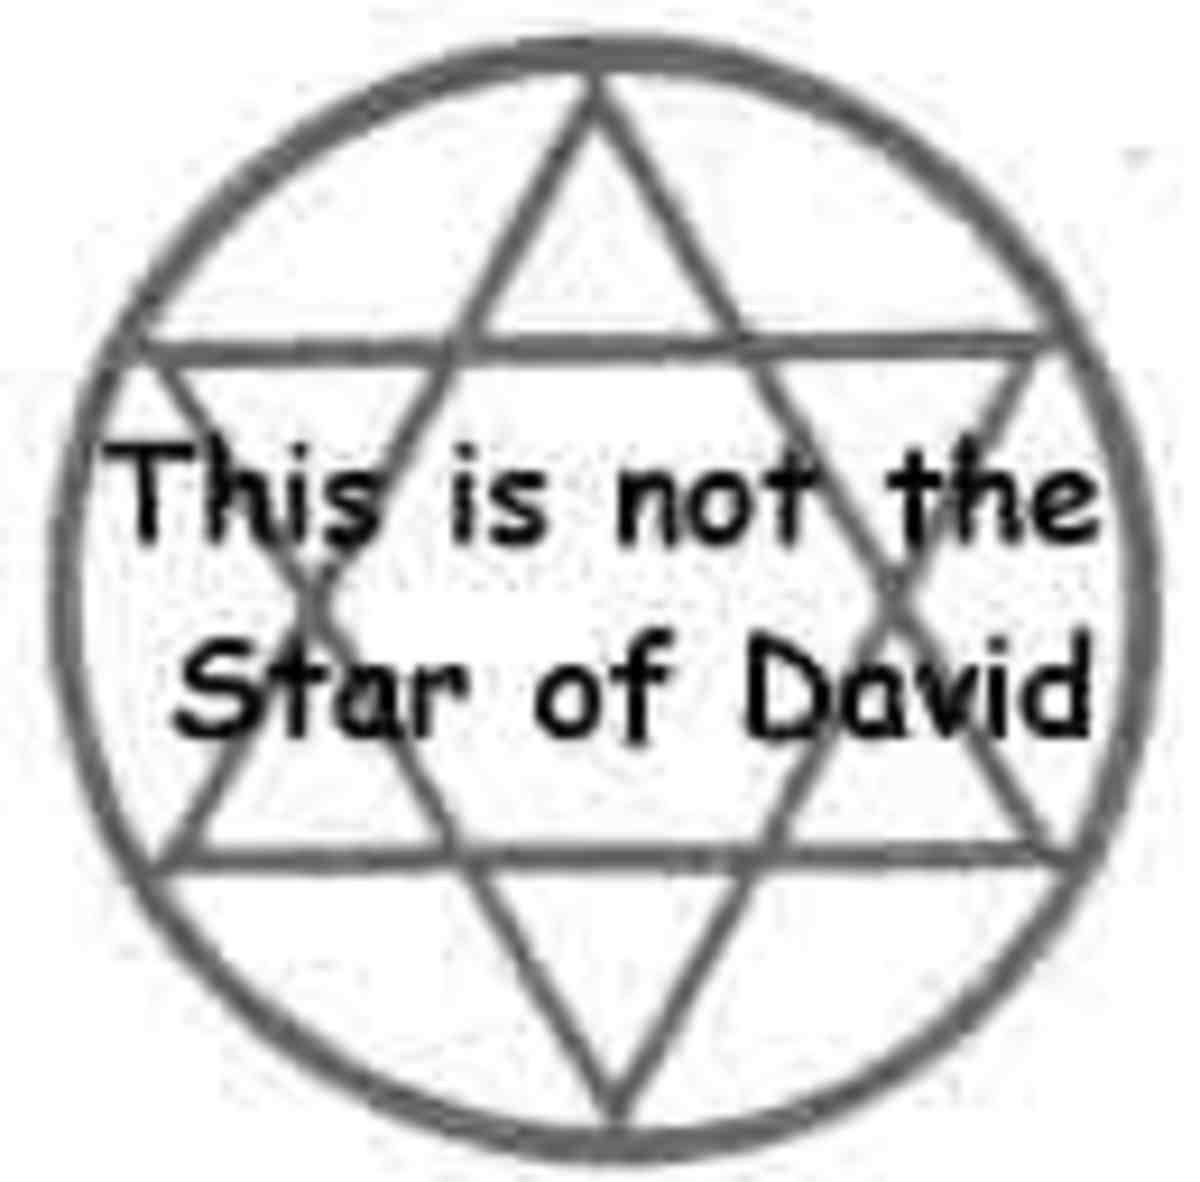 Is the Star of David Jewish?